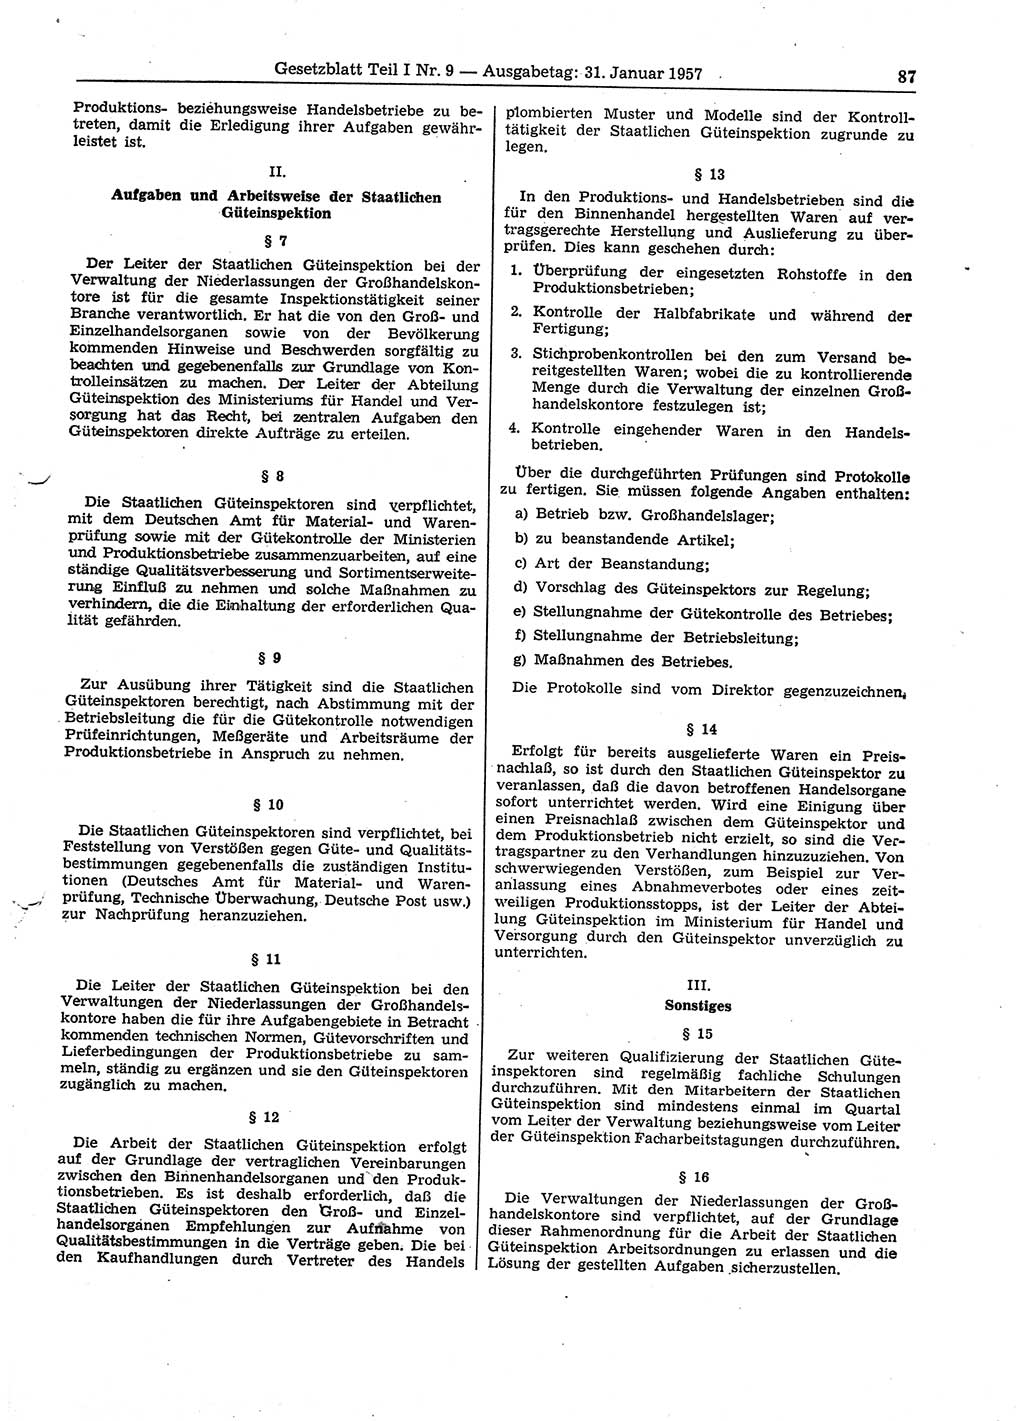 Gesetzblatt (GBl.) der Deutschen Demokratischen Republik (DDR) Teil Ⅰ 1957, Seite 87 (GBl. DDR Ⅰ 1957, S. 87)